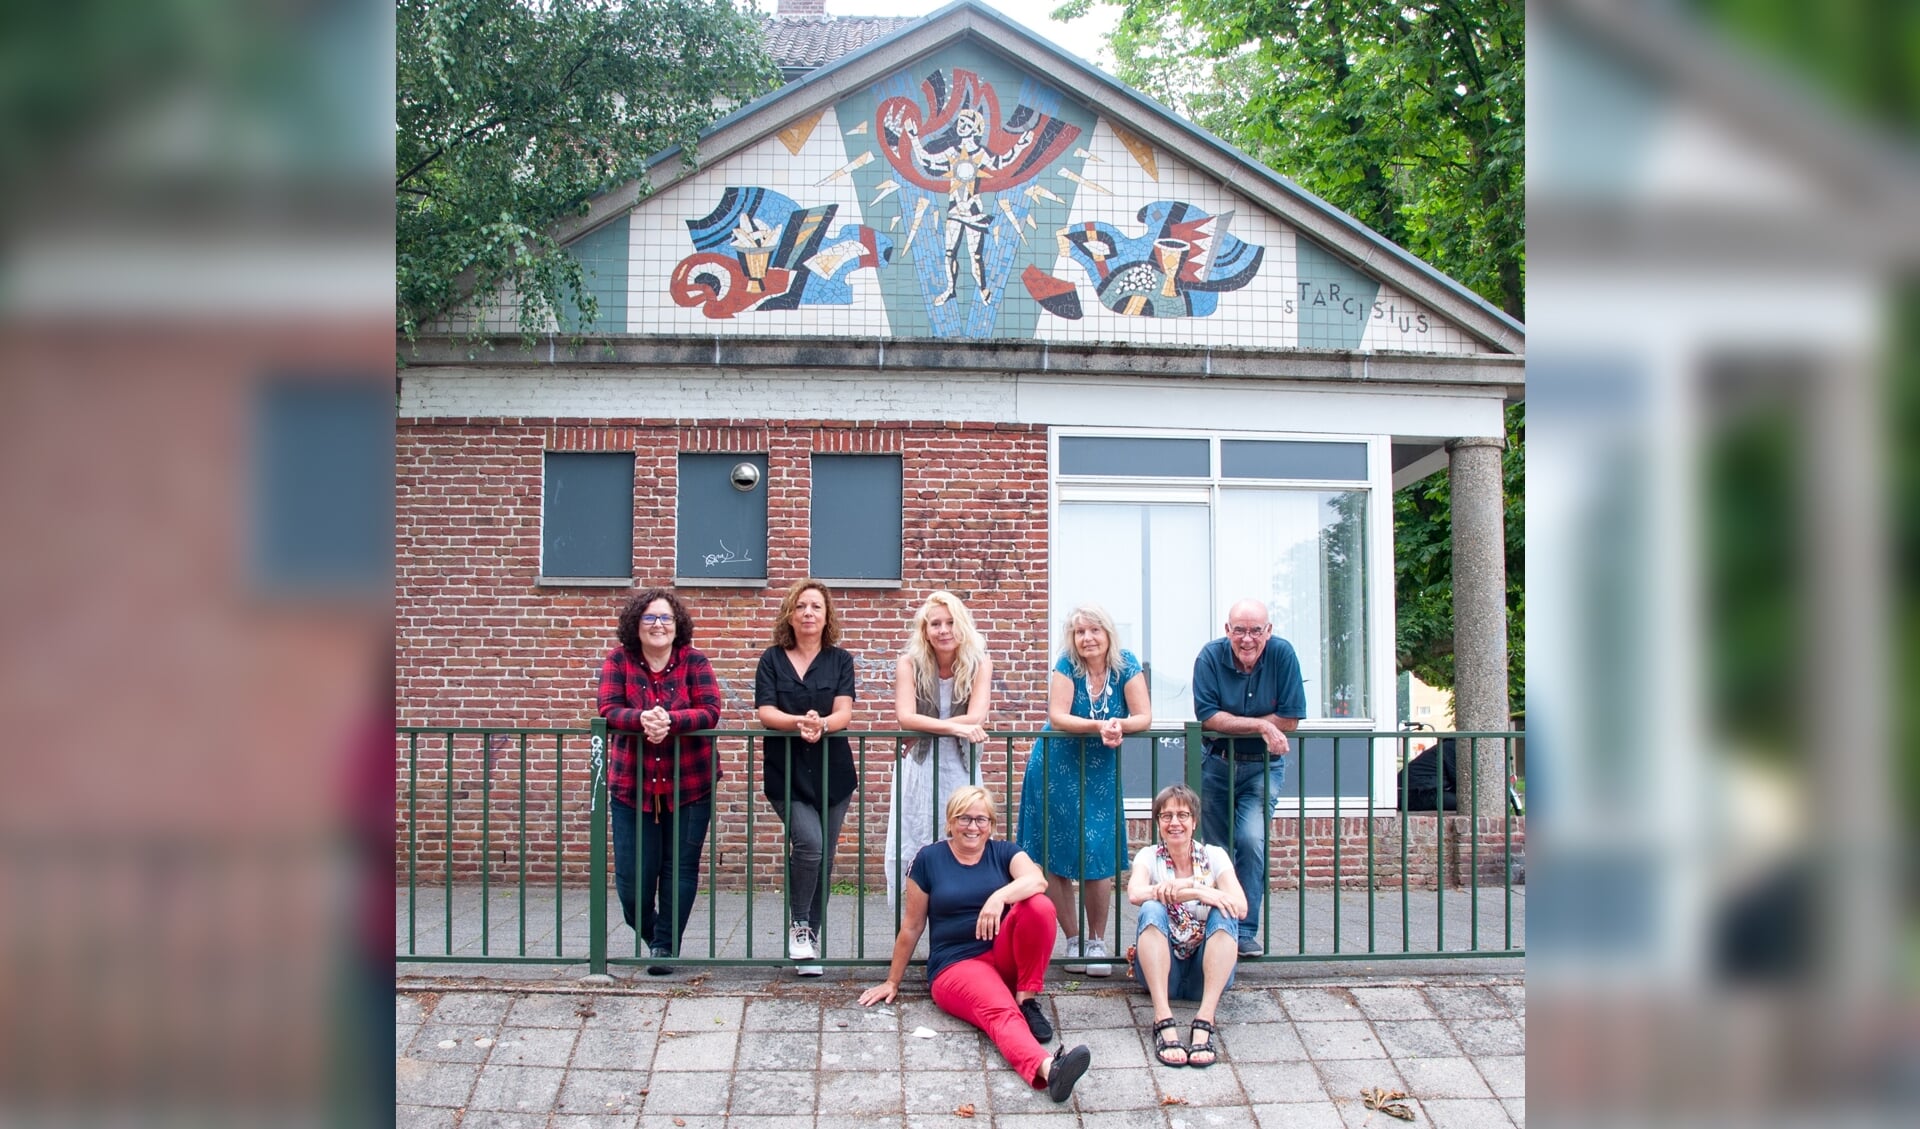 De kunstenaars in de oude Bergse basisschool houden zondag 11 juli een
open atelierdag.